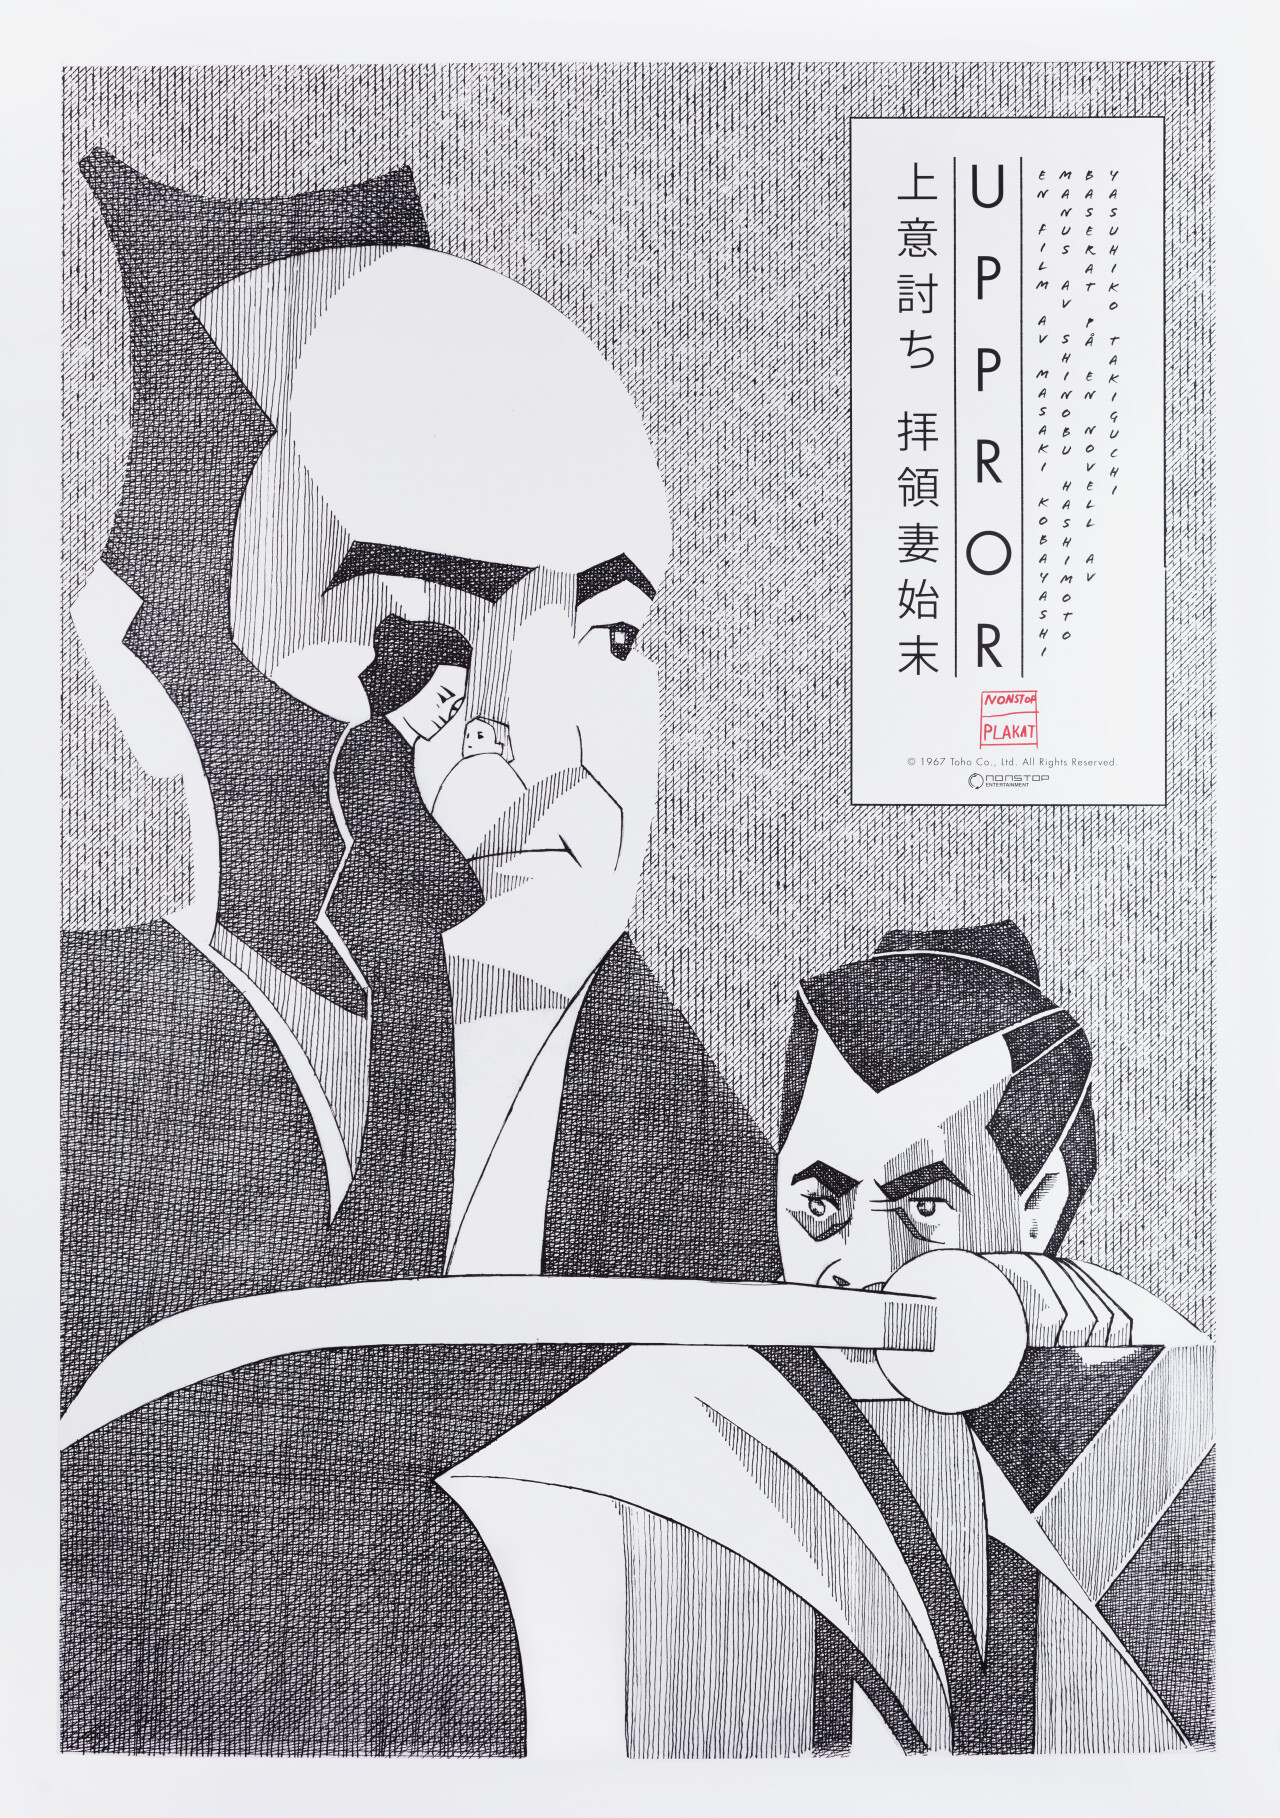 Восставший (Samurai Rebellion, 1967), режиссёр Масаки Кобаяши, шведский постер к фильму, автор Йохан Брозов (графический дизайн, 2022 год)